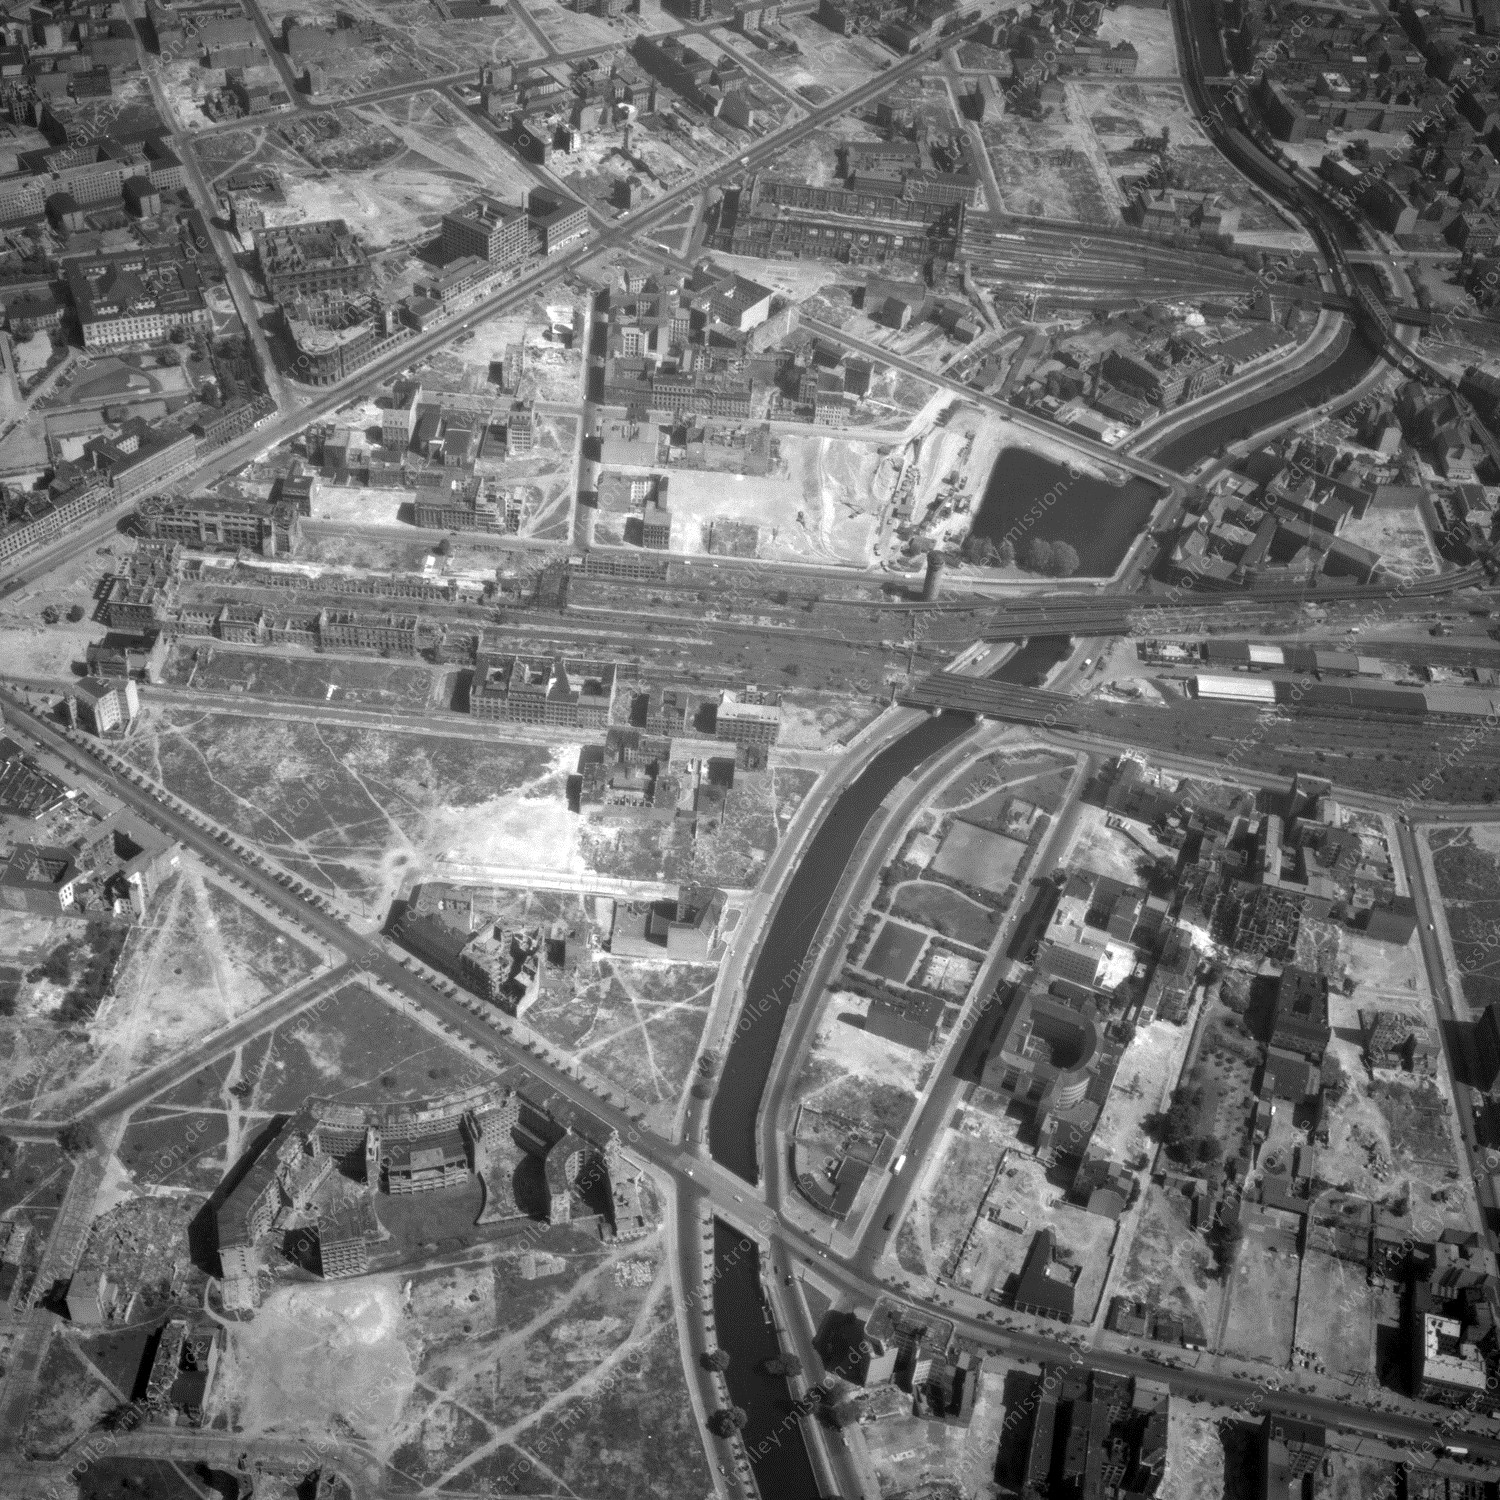 Alte Fotos und Luftbilder von Berlin - Luftbildaufnahme Nr. 09 - Historische Luftaufnahmen von West-Berlin aus dem Jahr 1954 - Flugstrecke Hotel